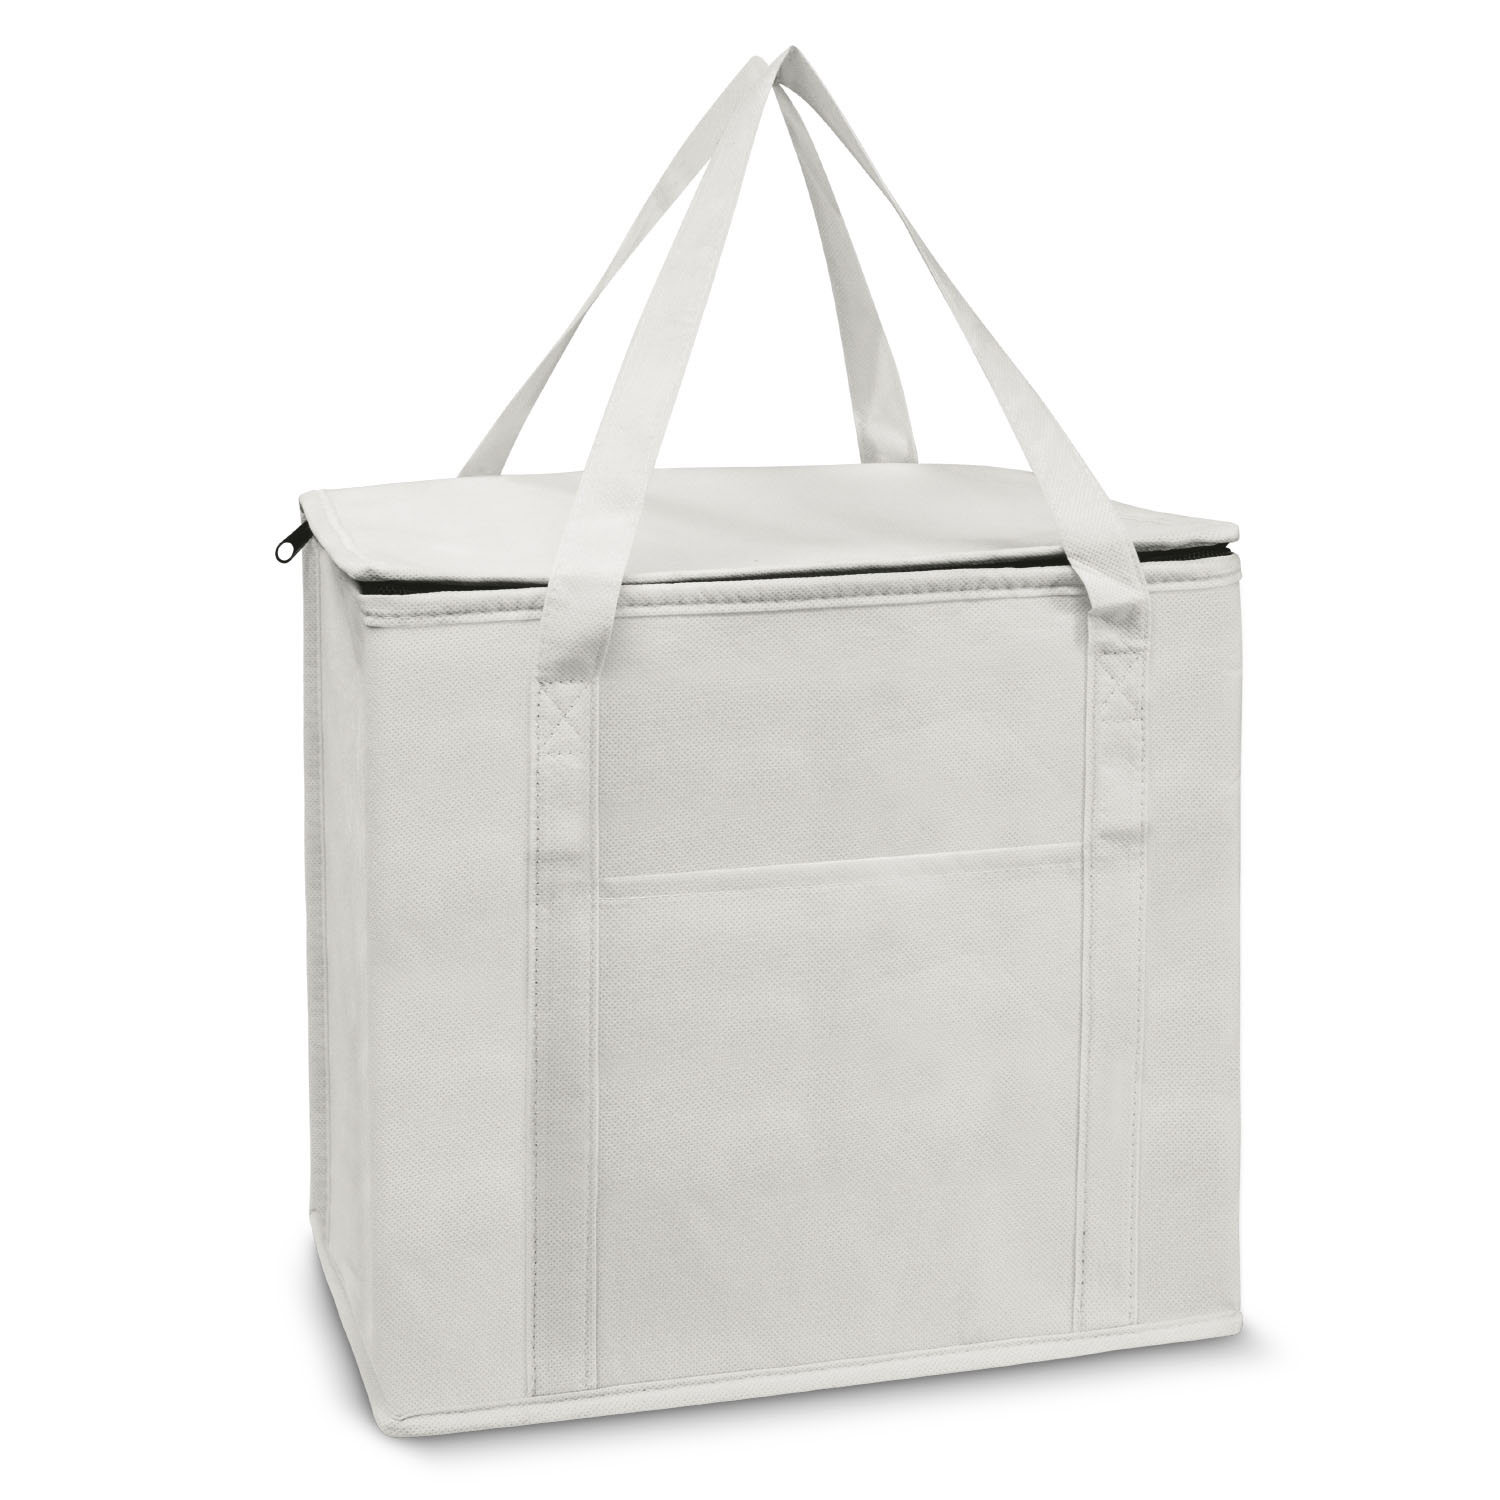 Buy Online White Sierra Shopping Cooler Bag in Australia